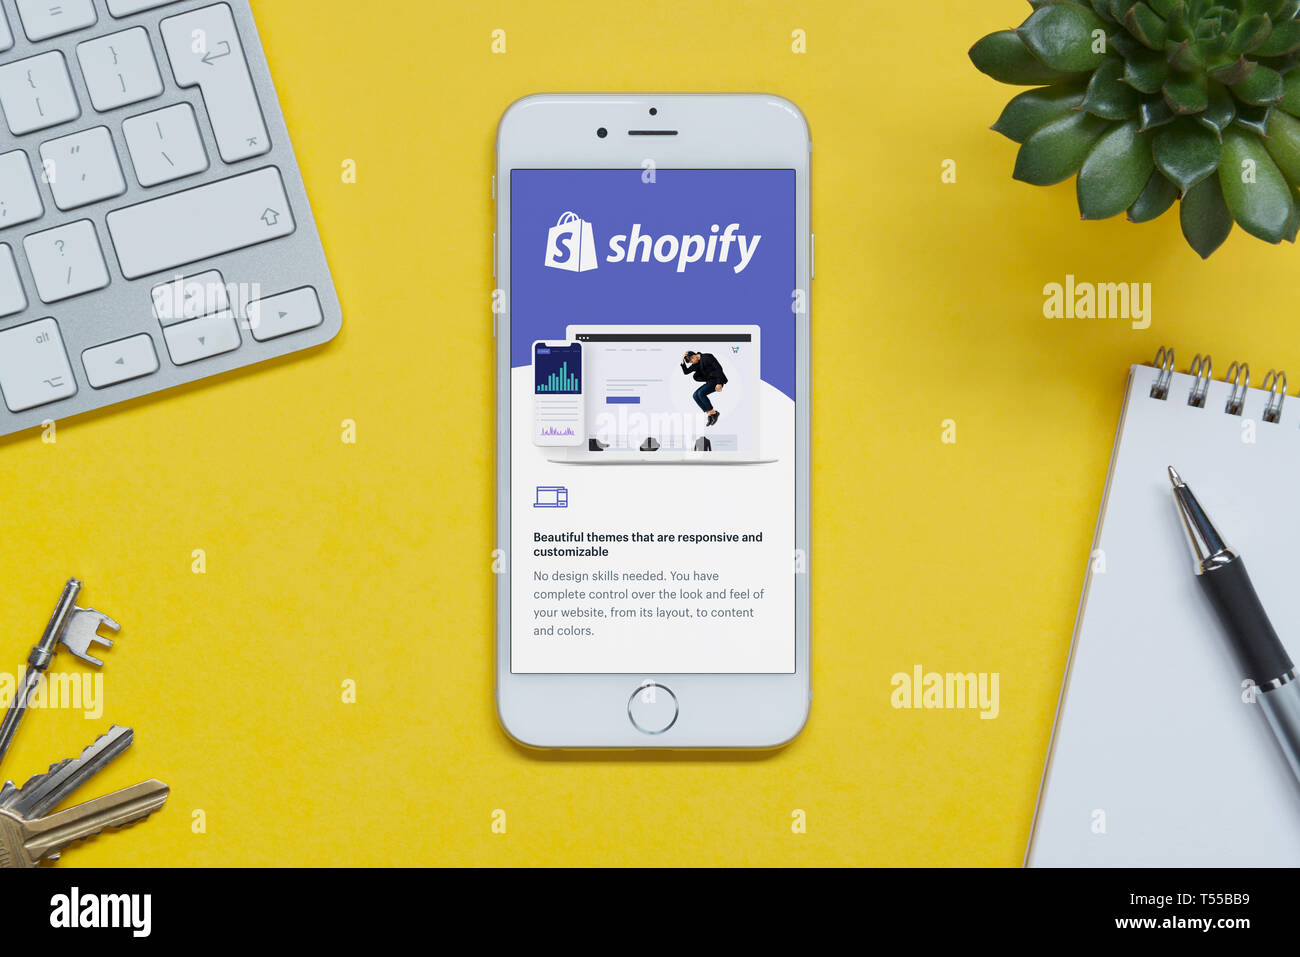 iPhone hiển thị trang web Shopify trên nền vàng sẽ là một trải nghiệm độc đáo cho những ai đang kinh doanh trực tuyến. Với cách hiển thị tuyệt đẹp, bạn không chỉ thu hút khách hàng mà còn giúp họ cảm thấy chuyên nghiệp và chắc chắn trong những lần đến thăm cửa hàng trực tuyến của bạn.